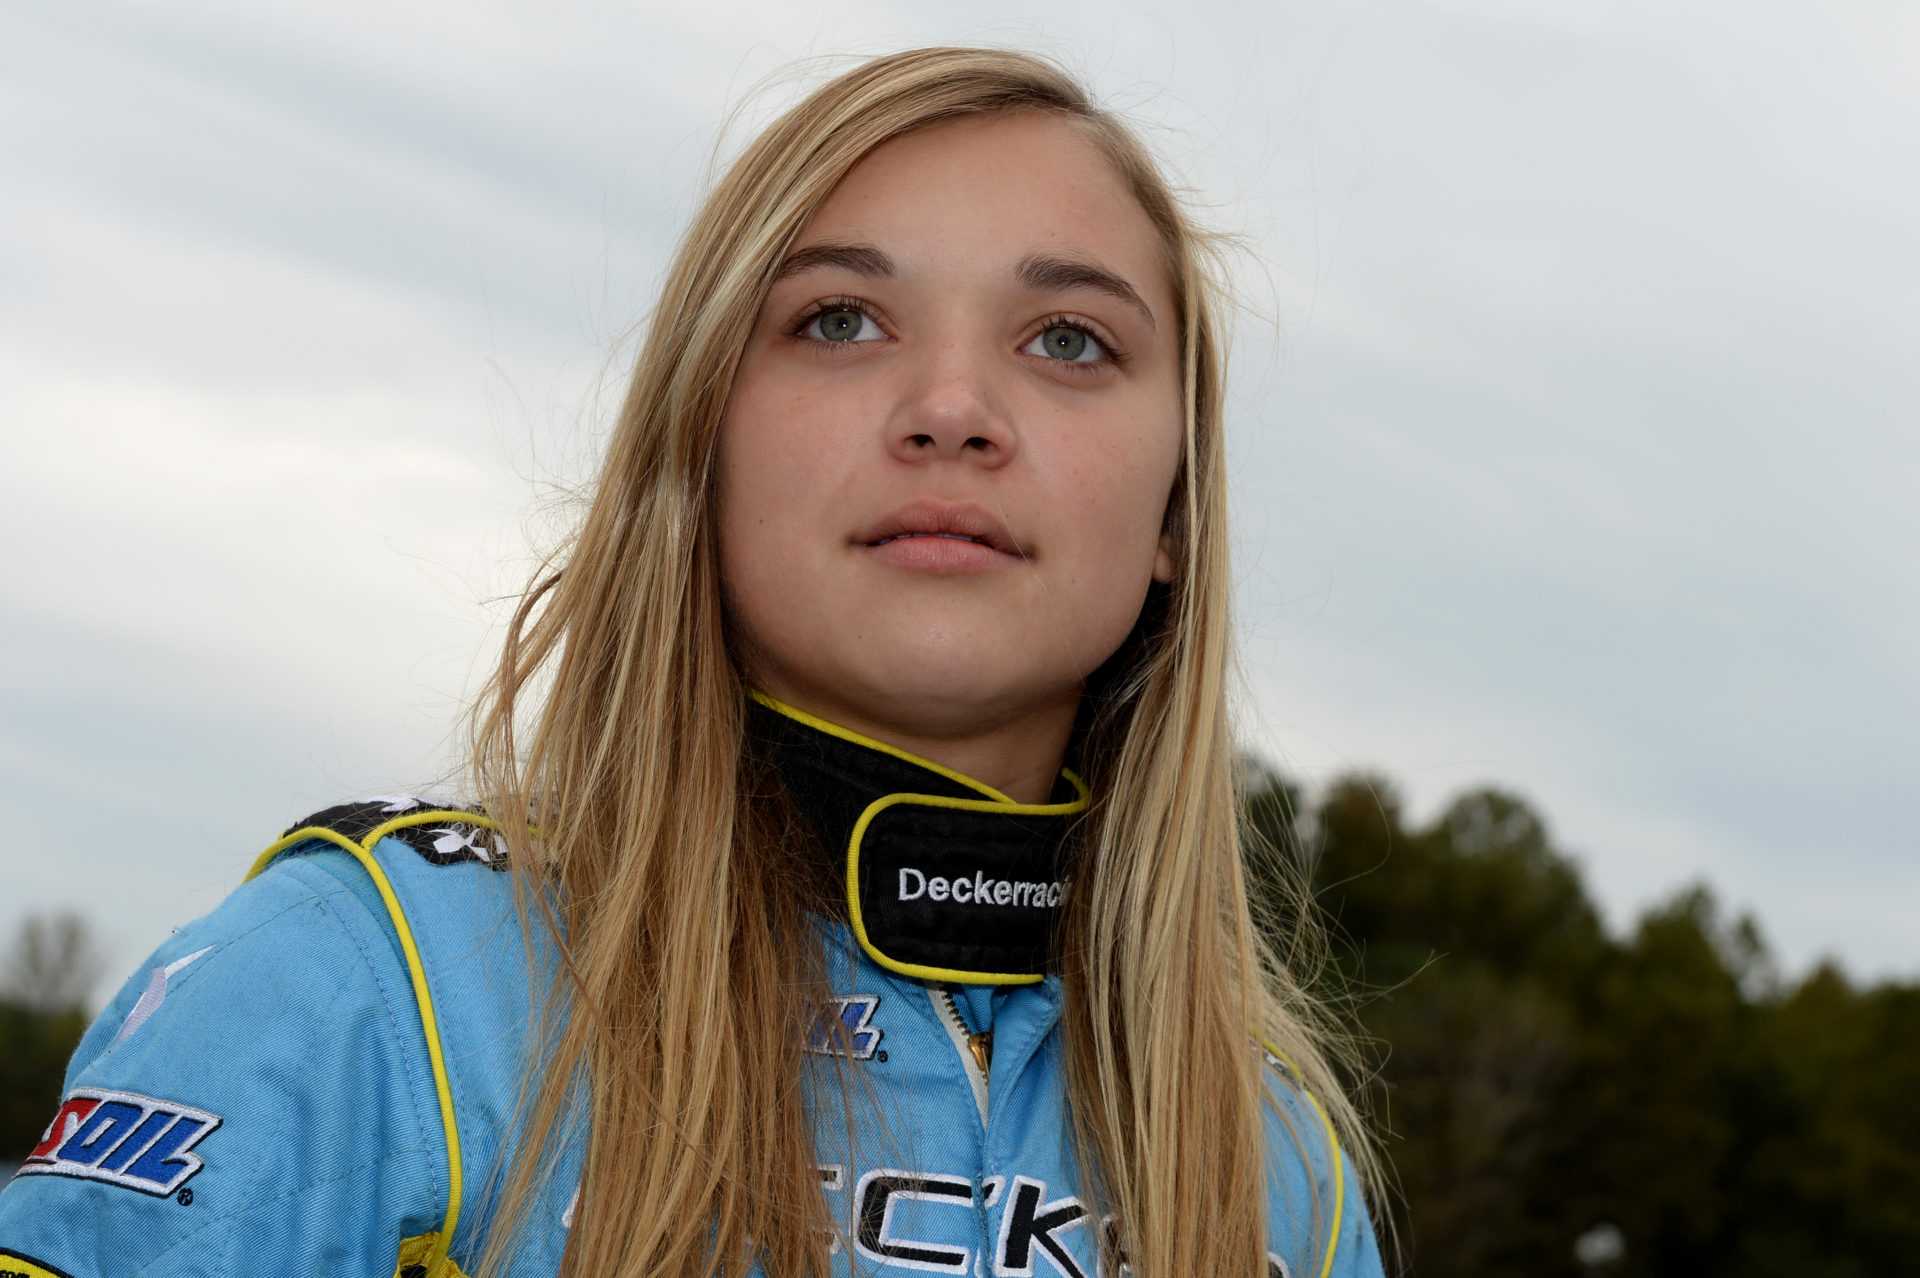 Quelle est la prochaine course pour Natalie Decker dans la série NASCAR Xfinity 2021?